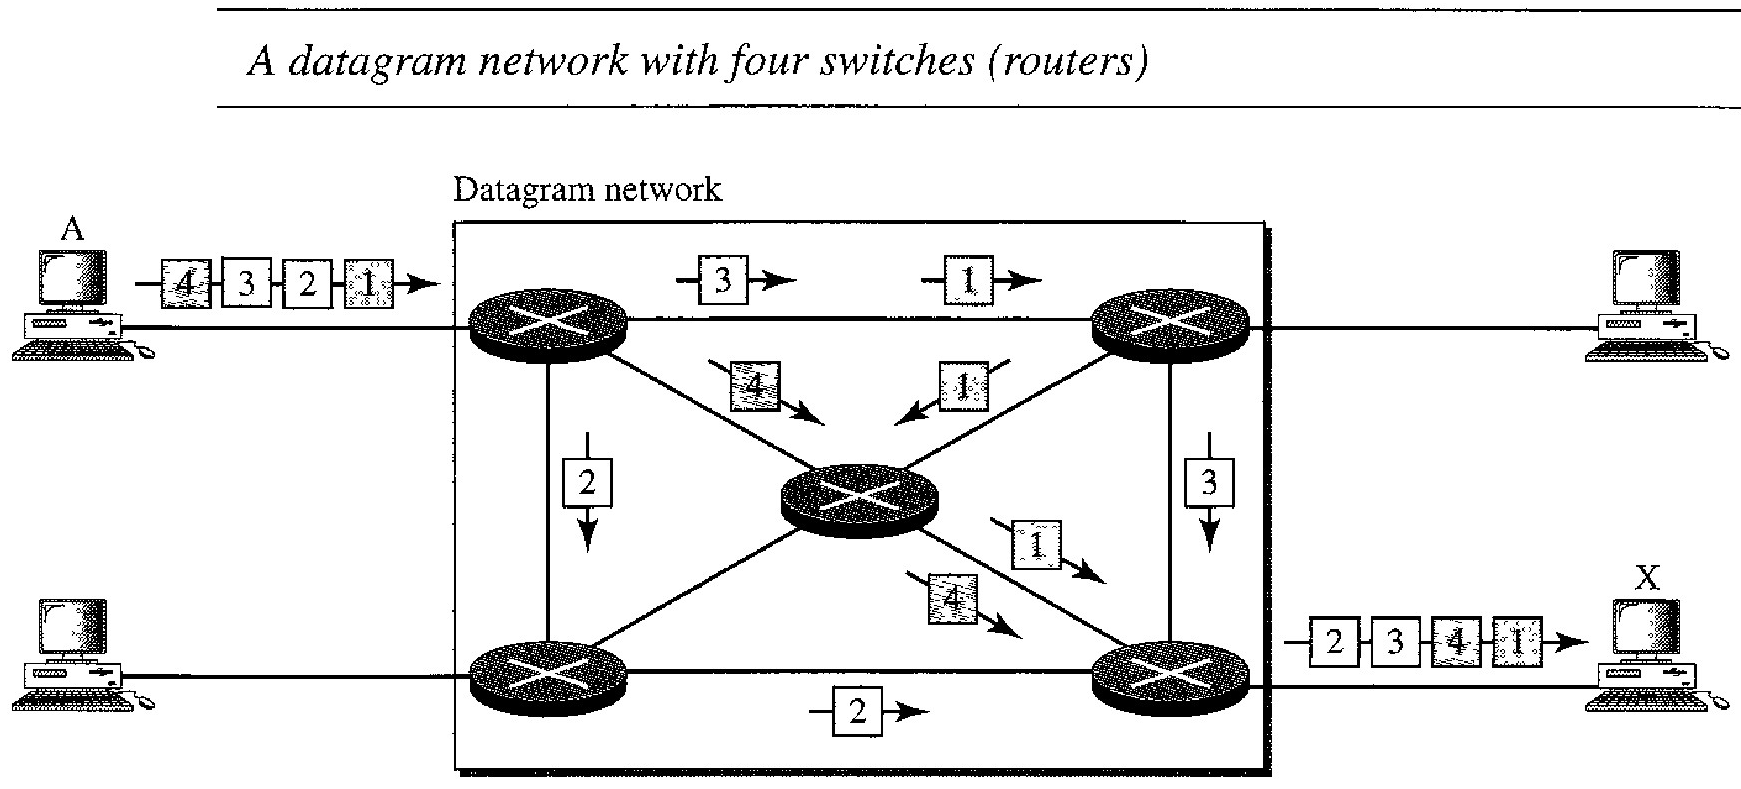 DATAGRAM NETWORKS